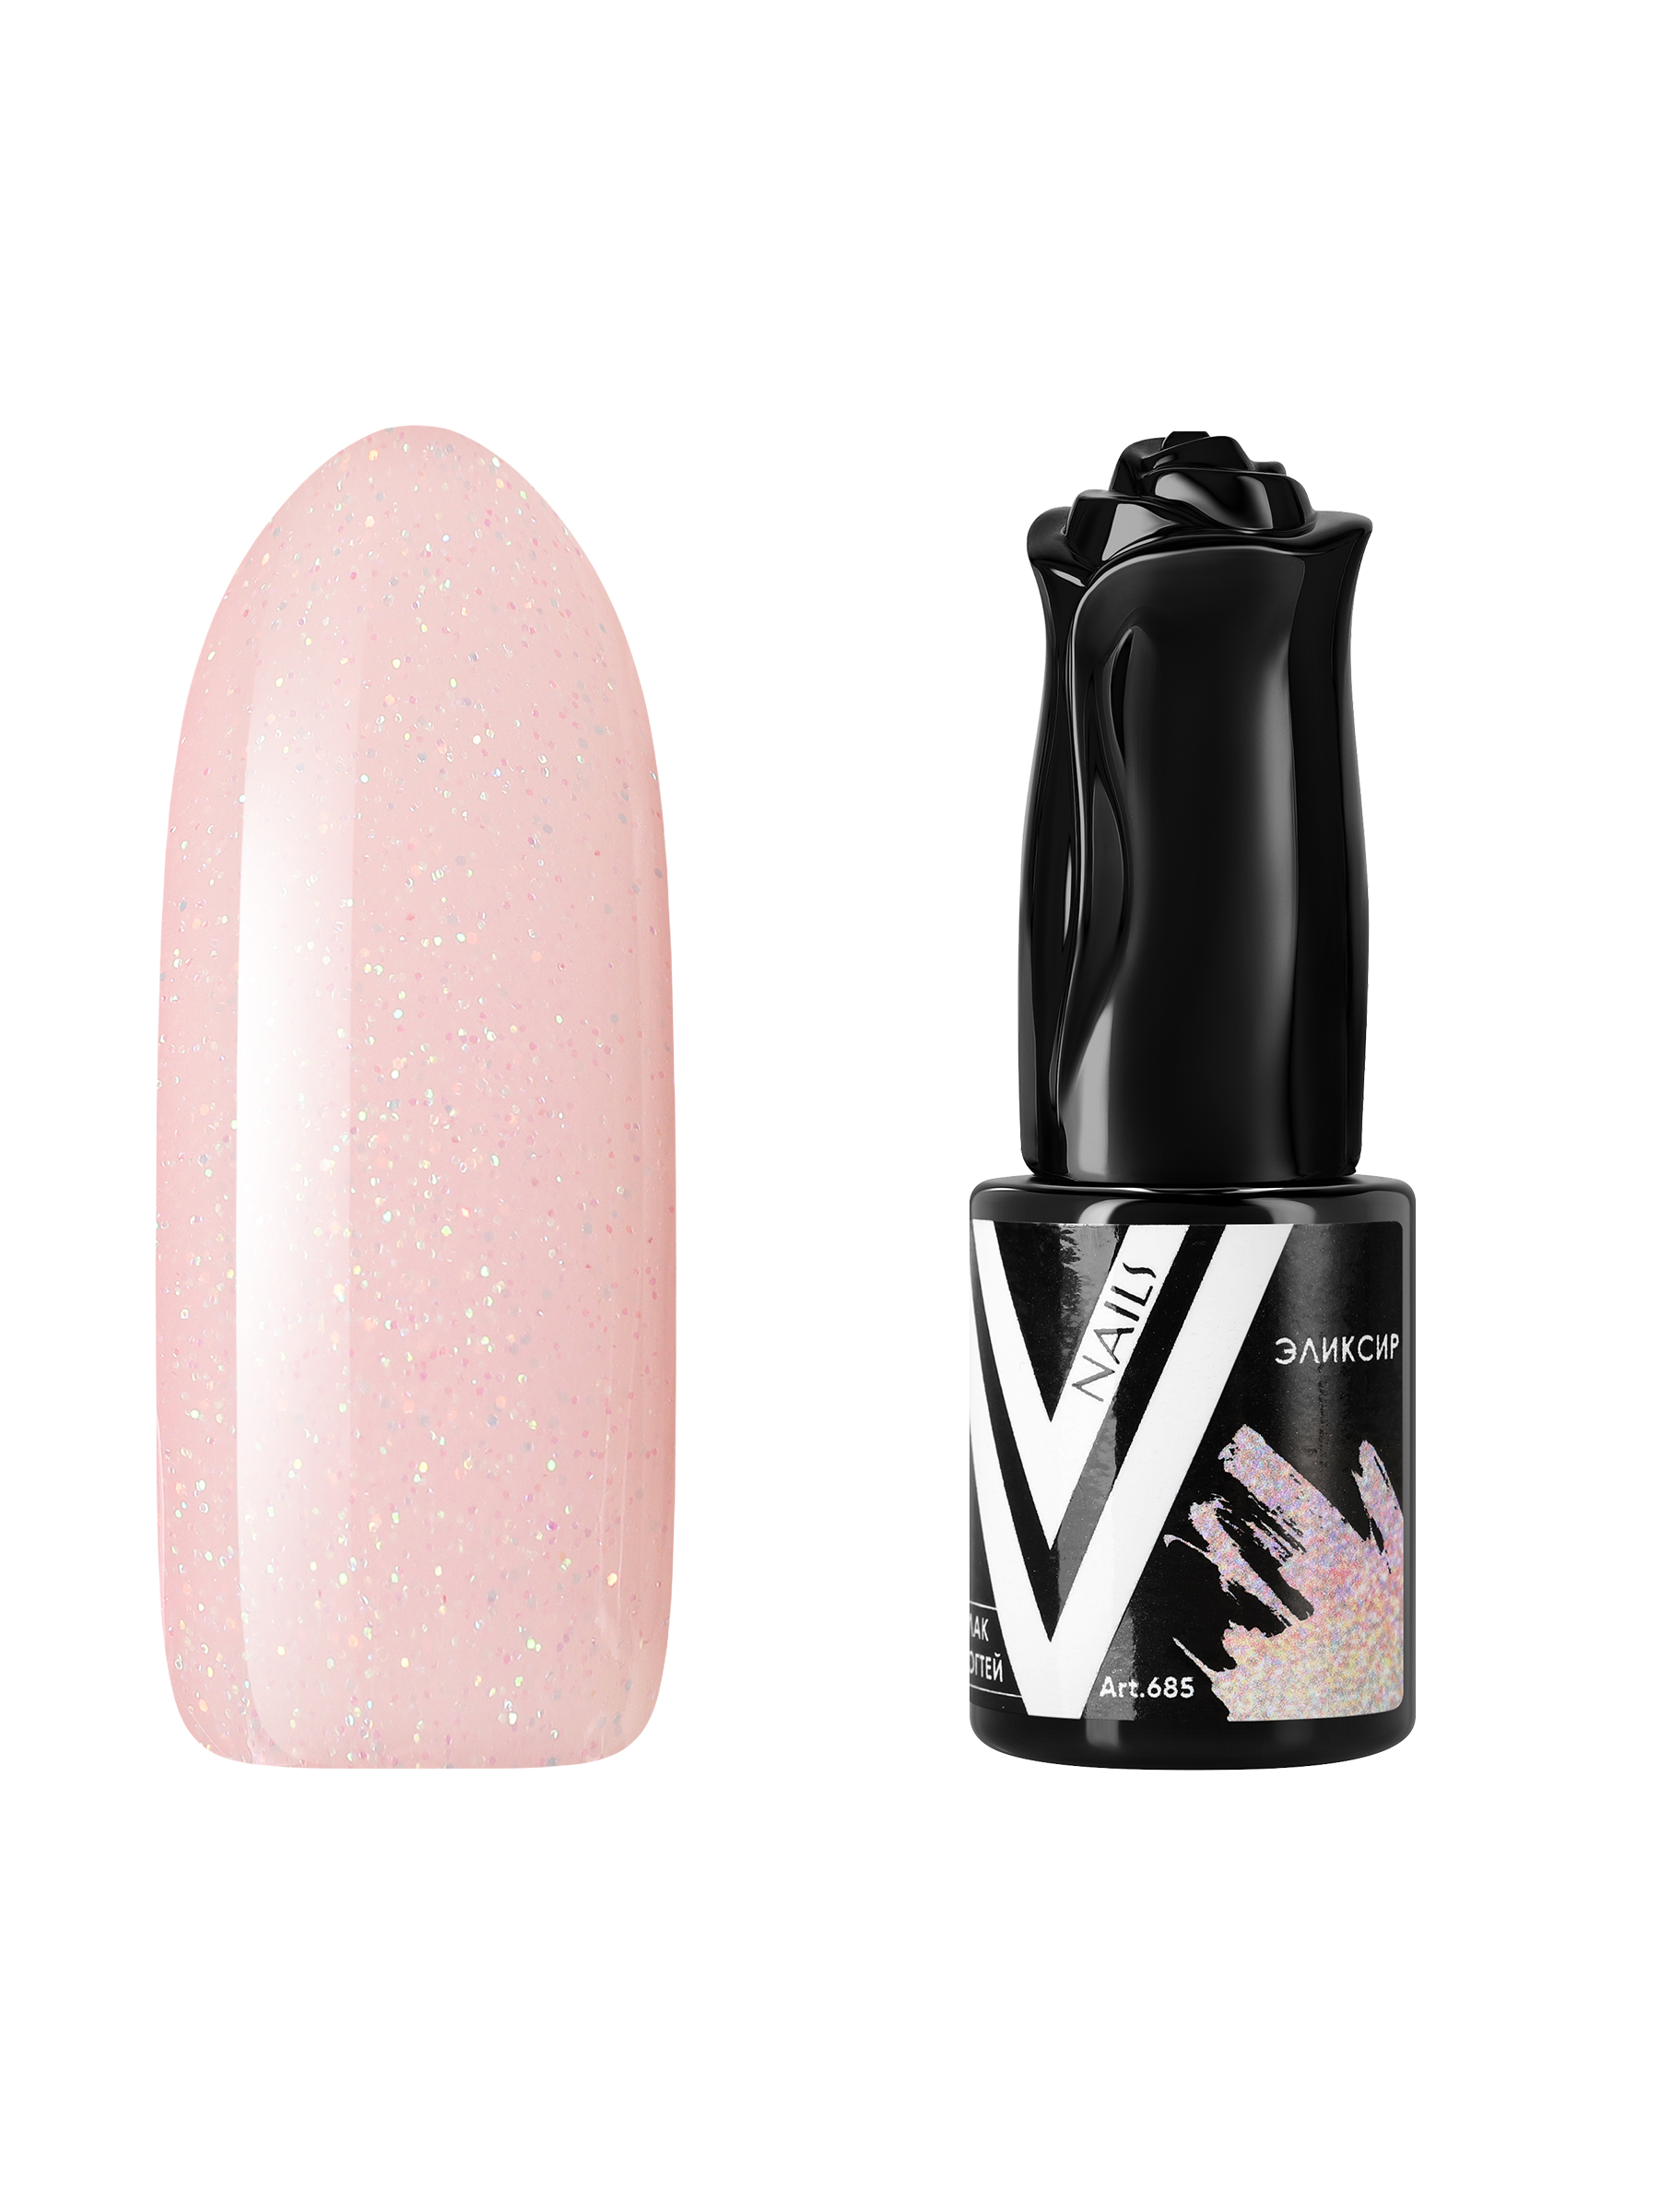 Гель-лак для ногтей с блестками Vogue Nails полупрозрачный, светлый, бежевый, 10 мл пудра artdeco запасной блок 10 бежевый светлый